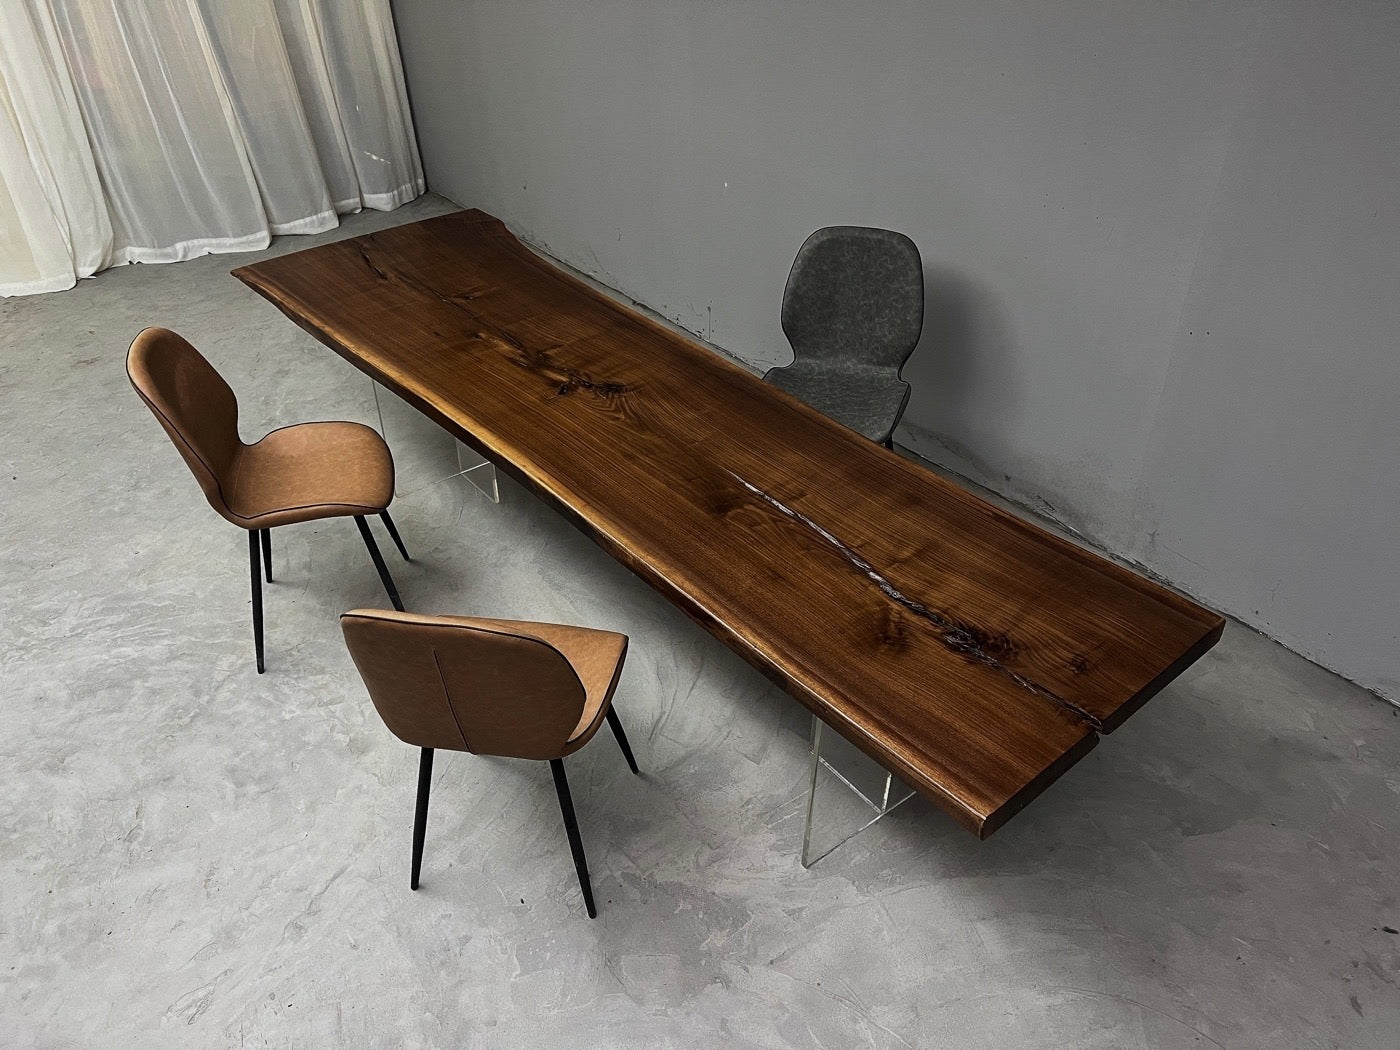 Lastra di noce nera americana, lastra di legno per piano tavolo, tavolo lastra di noce